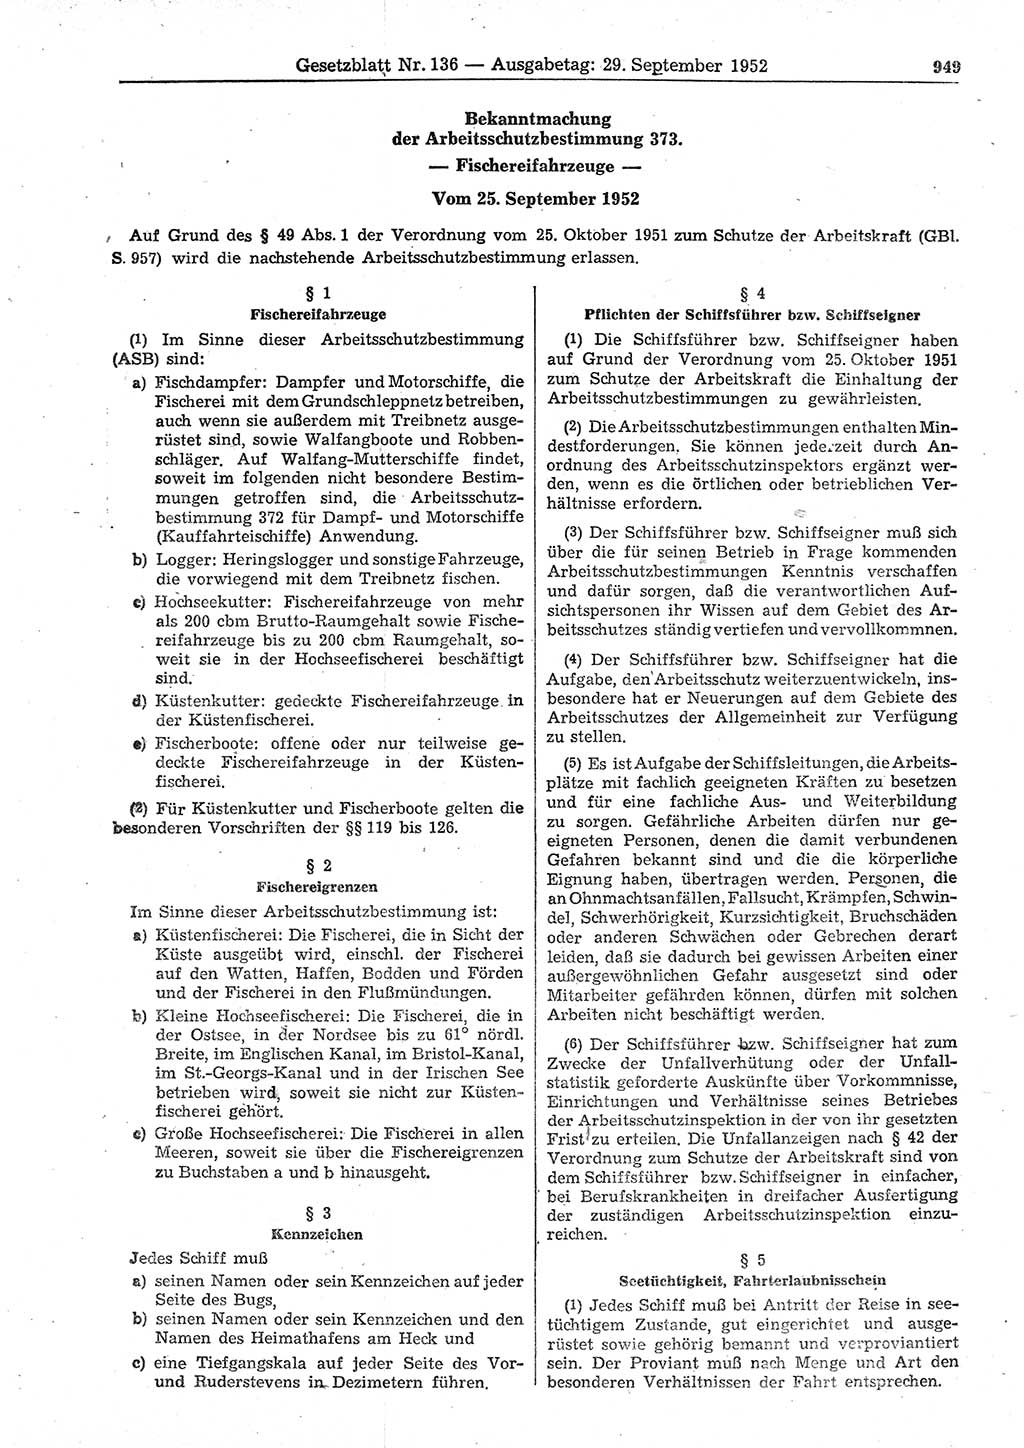 Gesetzblatt (GBl.) der Deutschen Demokratischen Republik (DDR) 1952, Seite 949 (GBl. DDR 1952, S. 949)